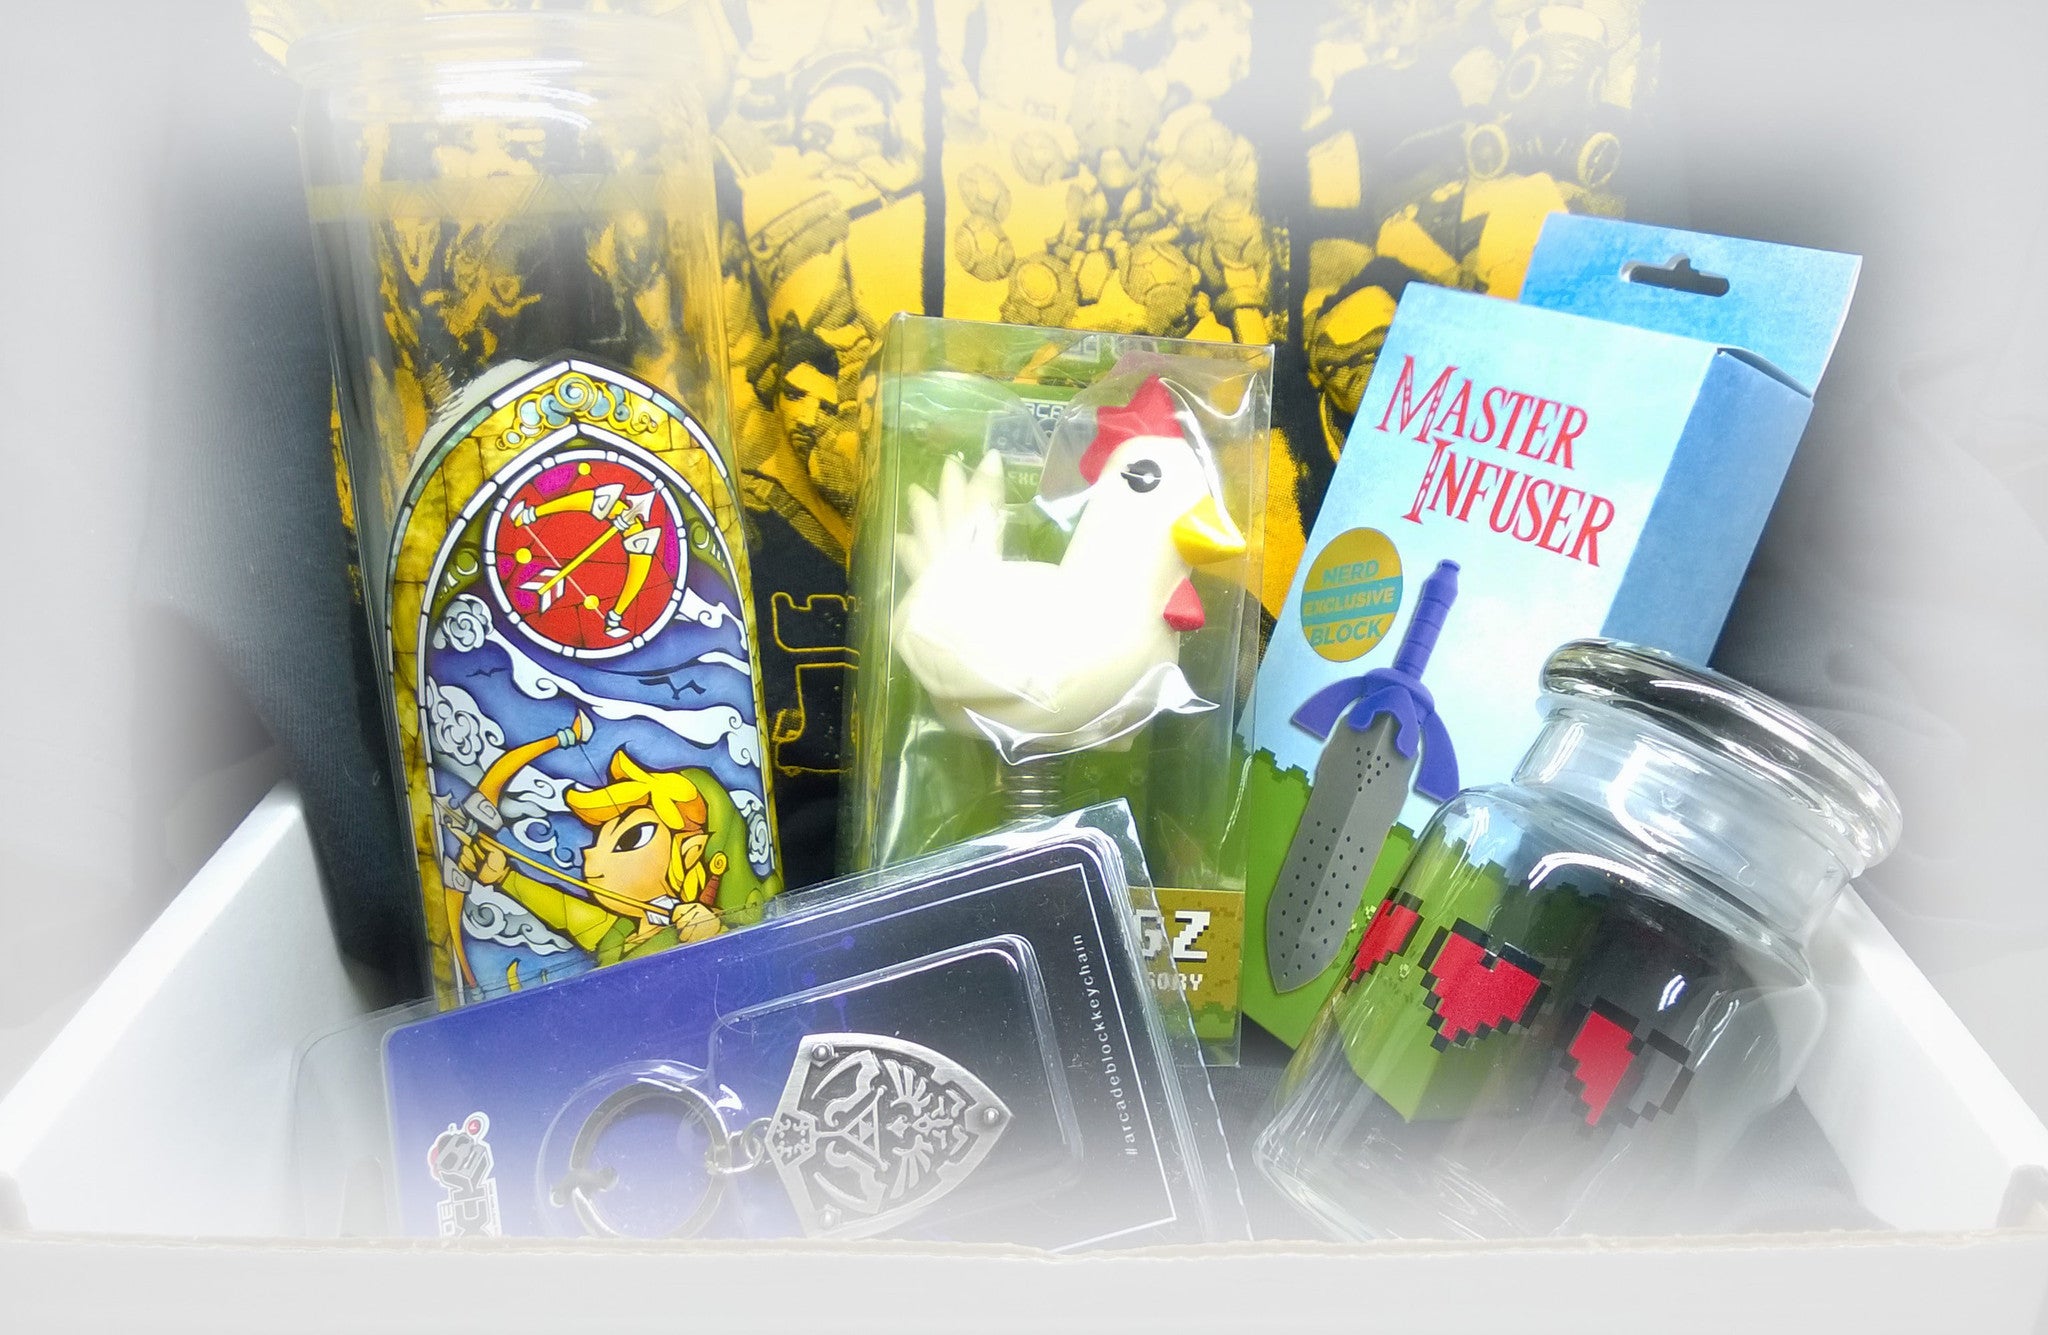 PJ's Games Zelda & Overwatch Prize Pack!